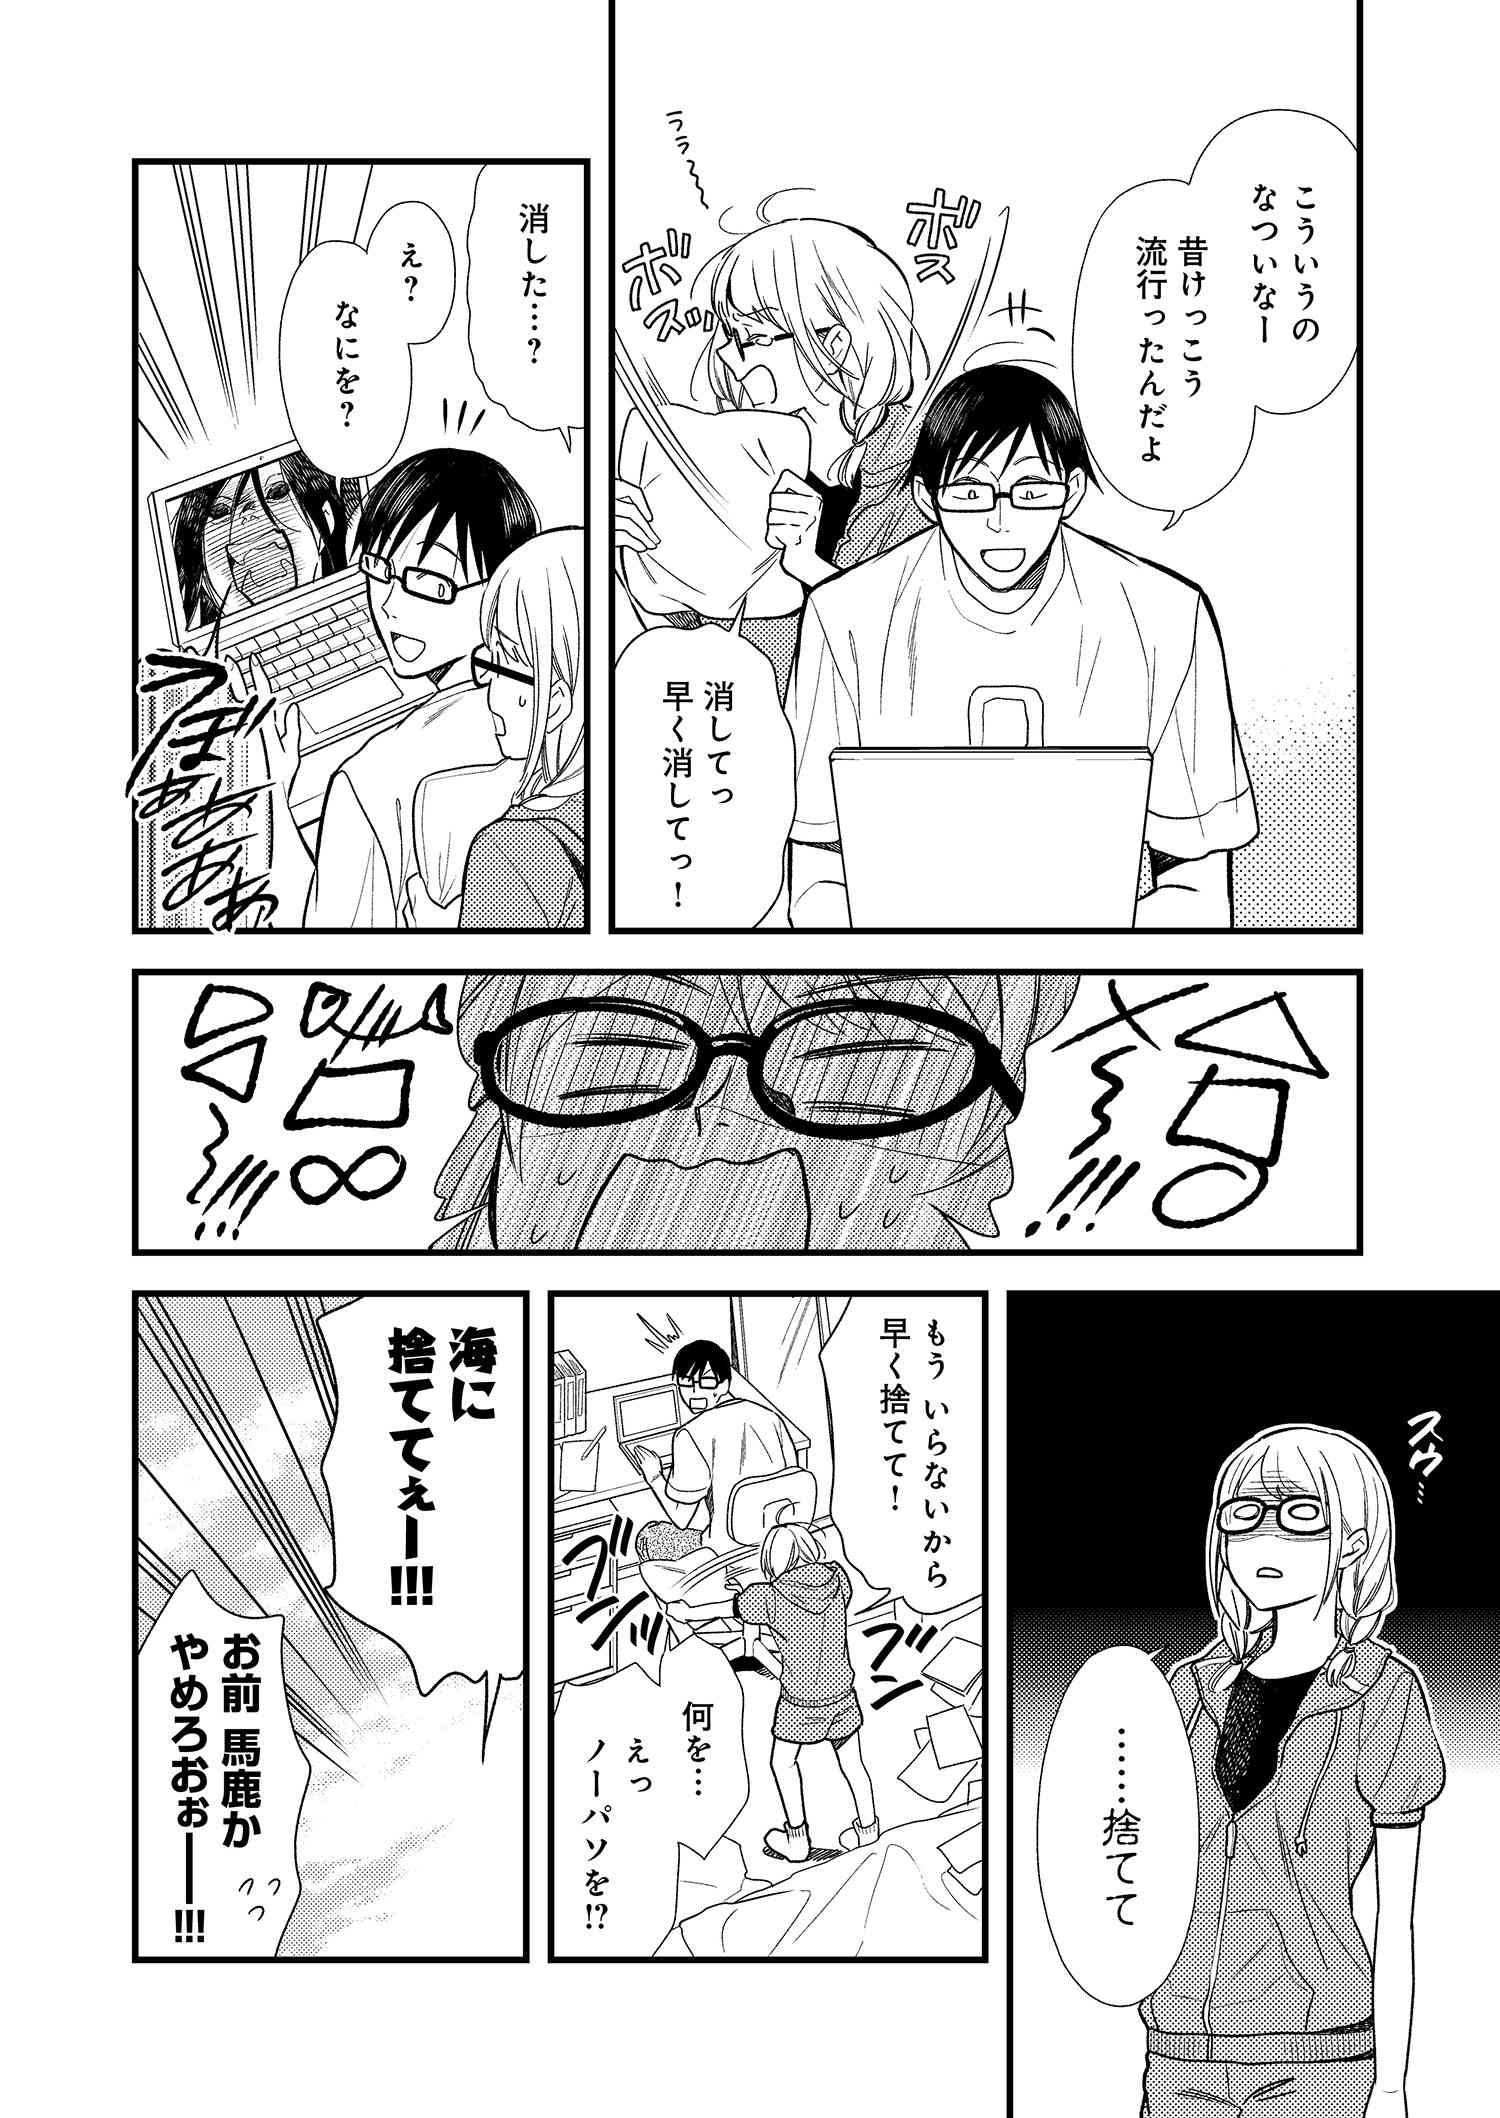 Fuku o Kiru Nara Konna Fuu ni - 服を着るならこんなふうに - Chapter 6 - Page 4